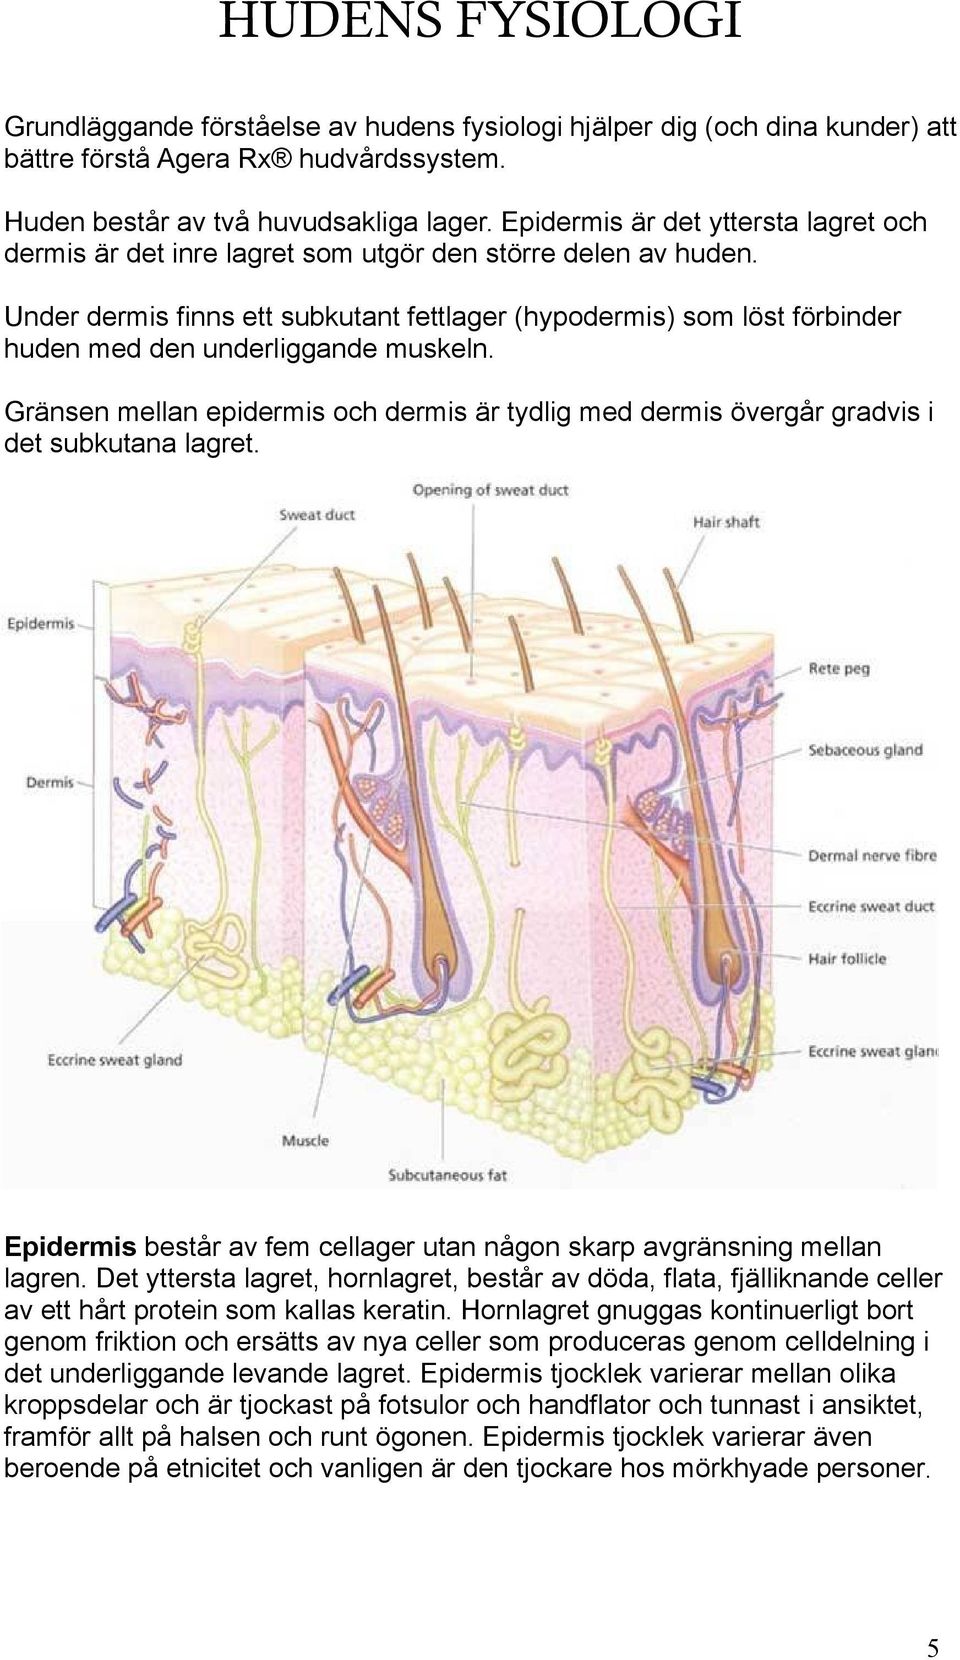 Under dermis finns ett subkutant fettlager (hypodermis) som löst förbinder huden med den underliggande muskeln.